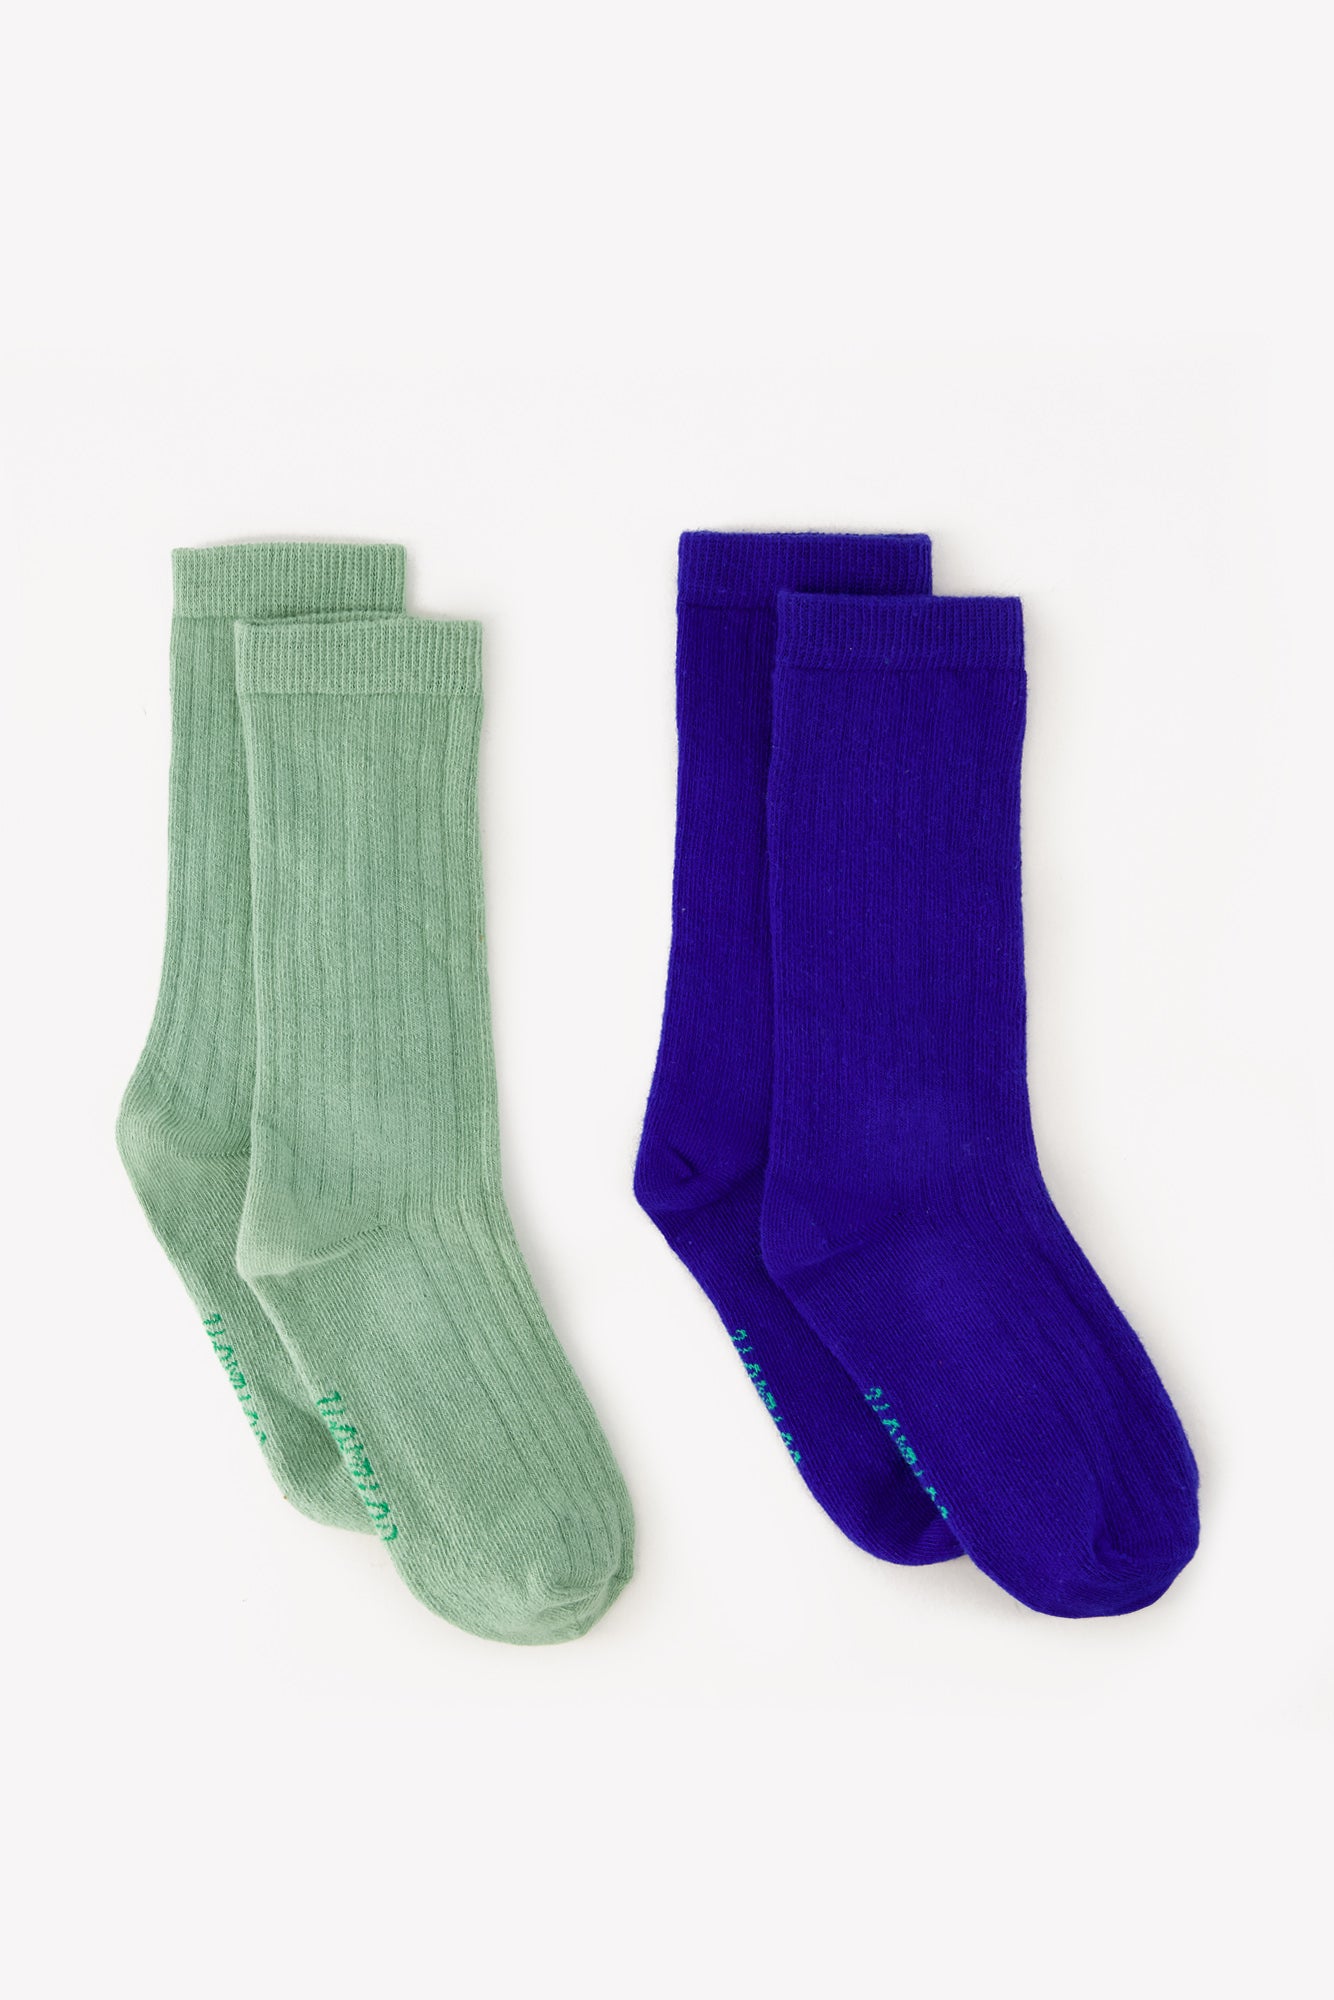 Lot 2 Socks - green/blue ribs